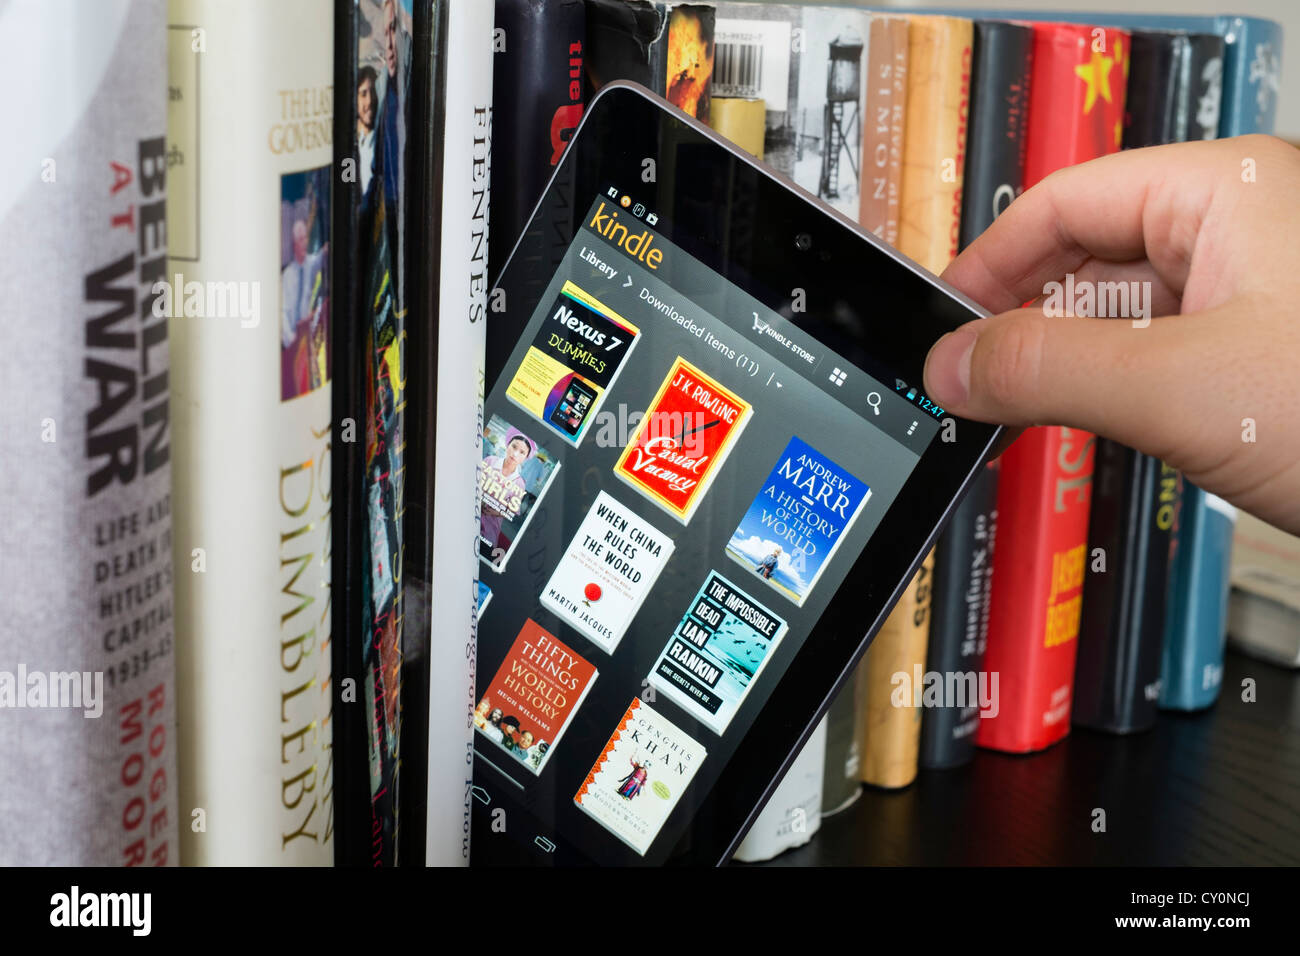 Google Nexus 7 tablet computer avec kindle e-book library application et durée de 29,7 livres papier traditionnel Banque D'Images